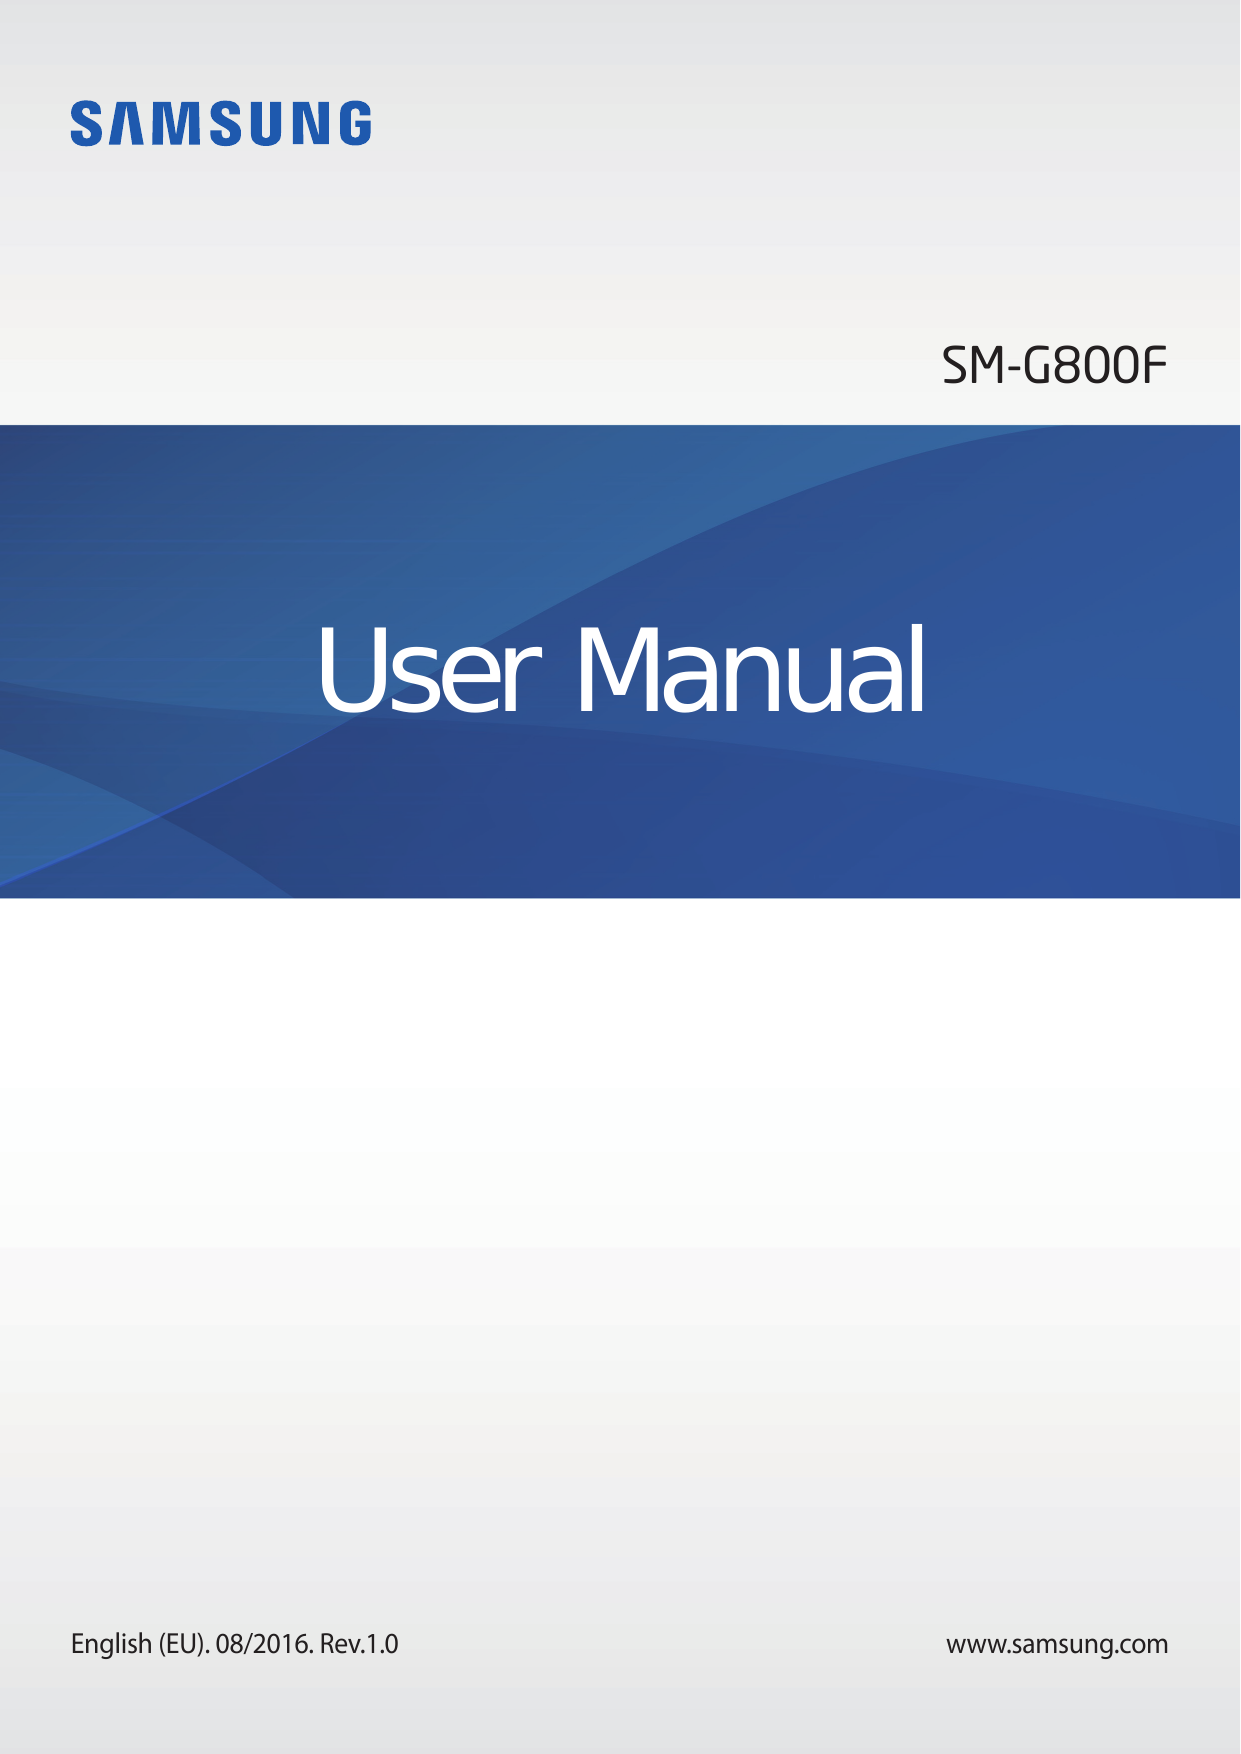 SM-G800FUser ManualEnglish (EU). 08/2016. Rev.1.0www.samsung.com